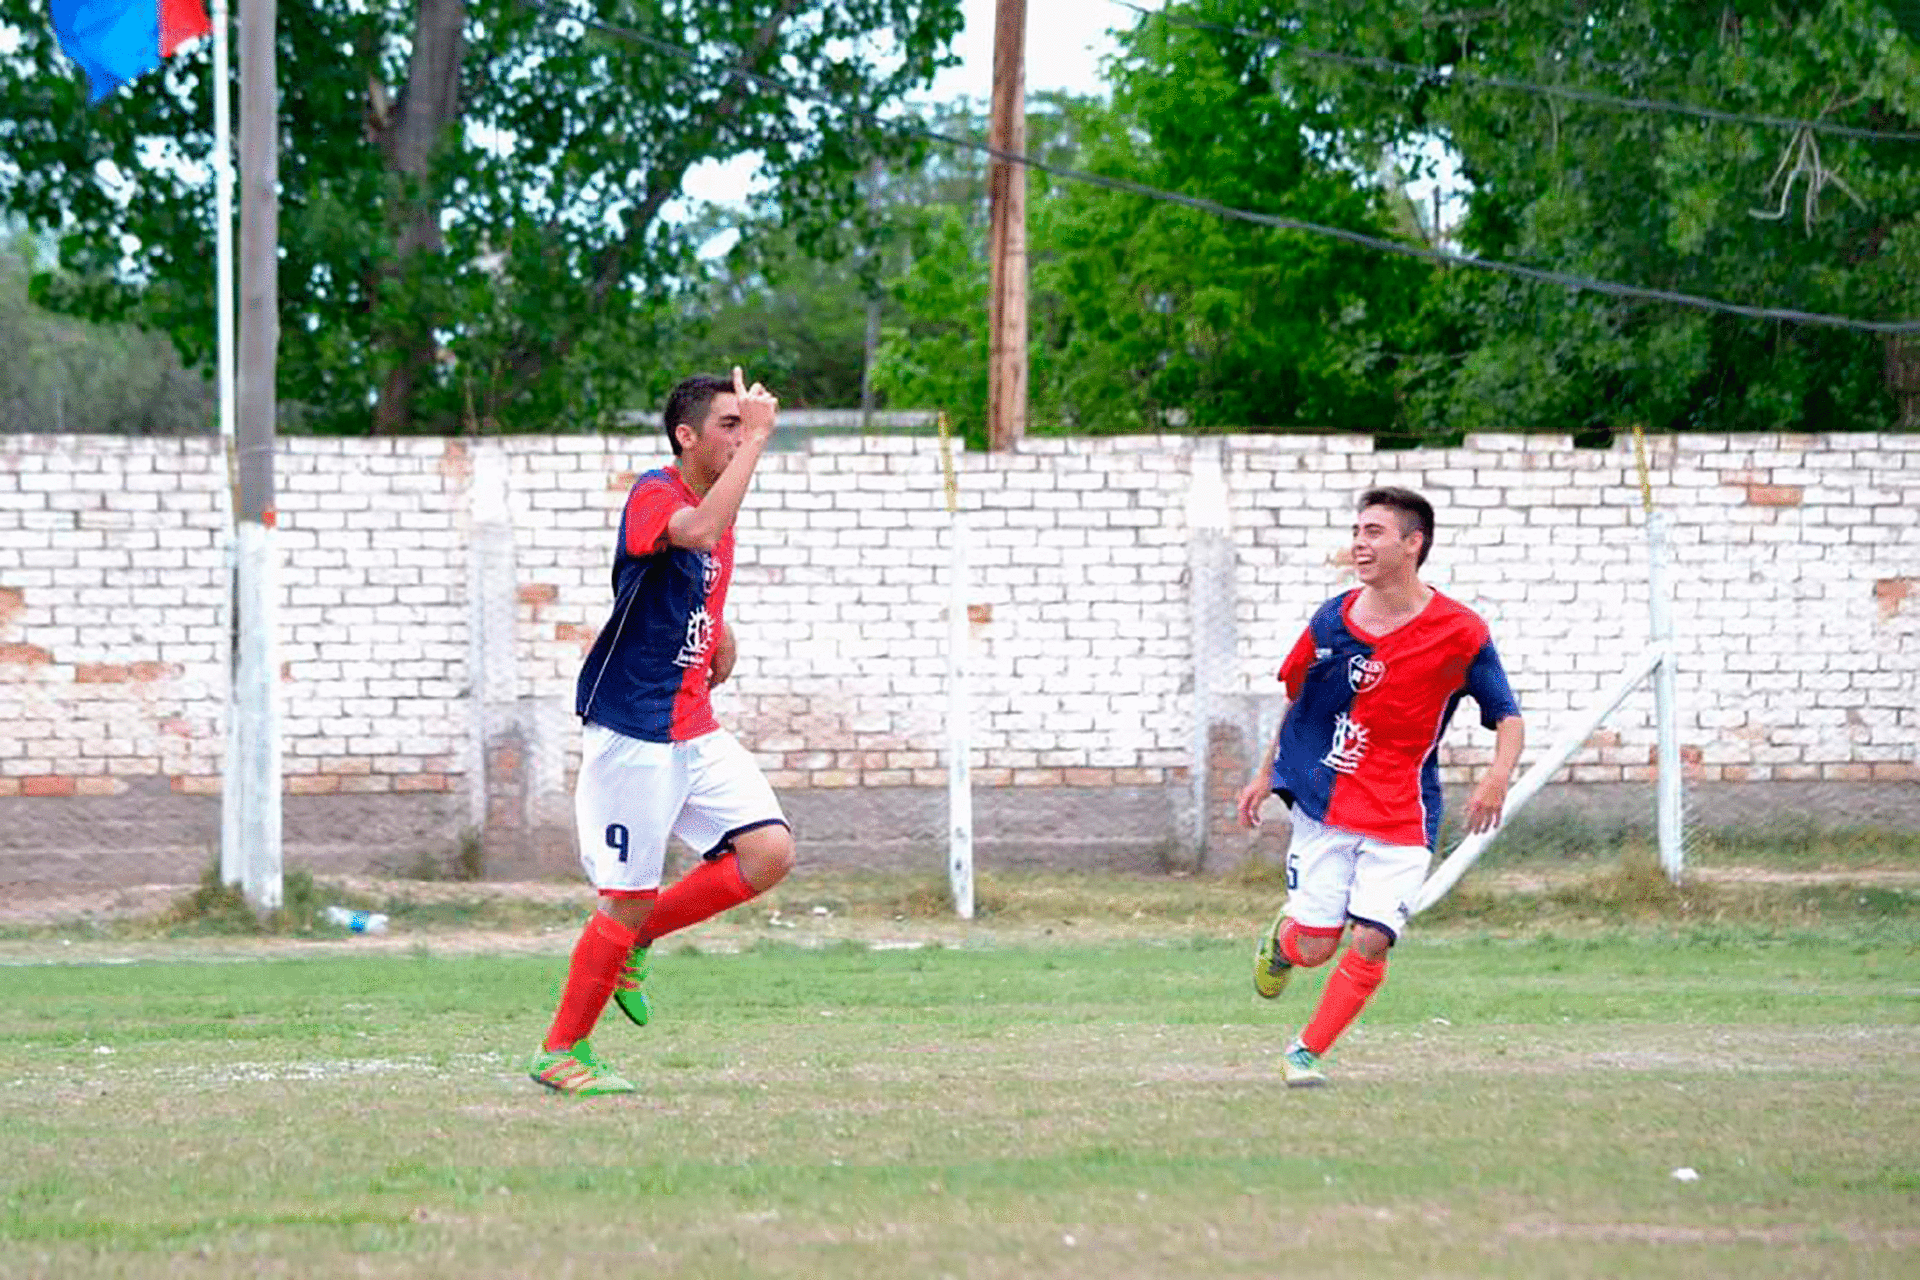 Franco, con la "9" del Club Atlético Barrancas de Maipú, Mendoza, gritando un gol